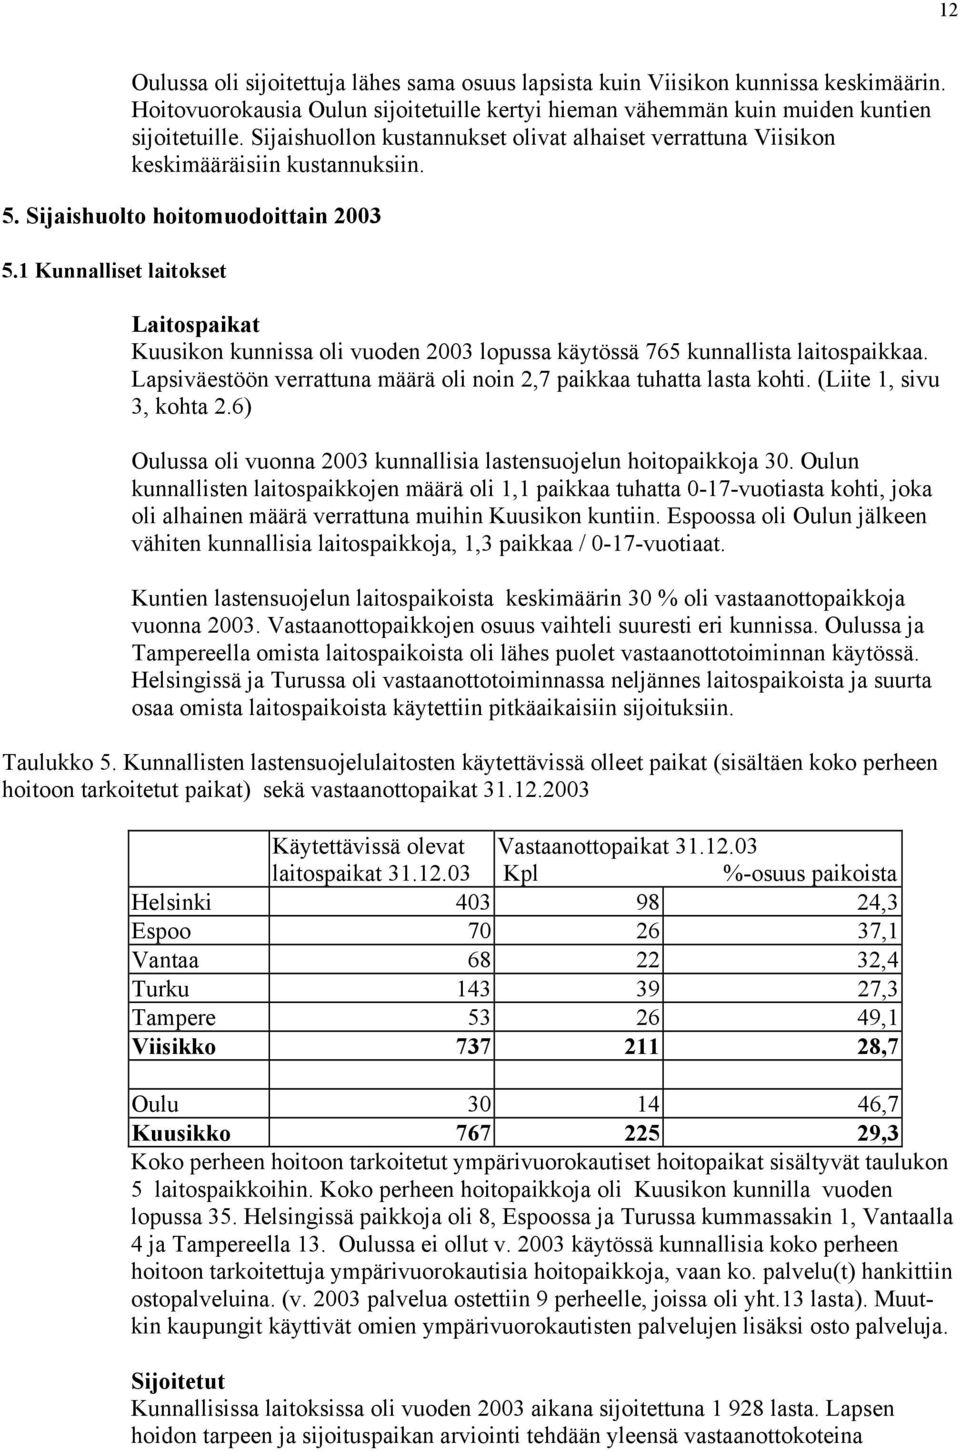 1 Kunnalliset laitokset Laitospaikat Kuusikon kunnissa oli vuoden 2003 lopussa käytössä 765 kunnallista laitospaikkaa. Lapsiväestöön verrattuna määrä oli noin 2,7 paikkaa tuhatta lasta kohti.